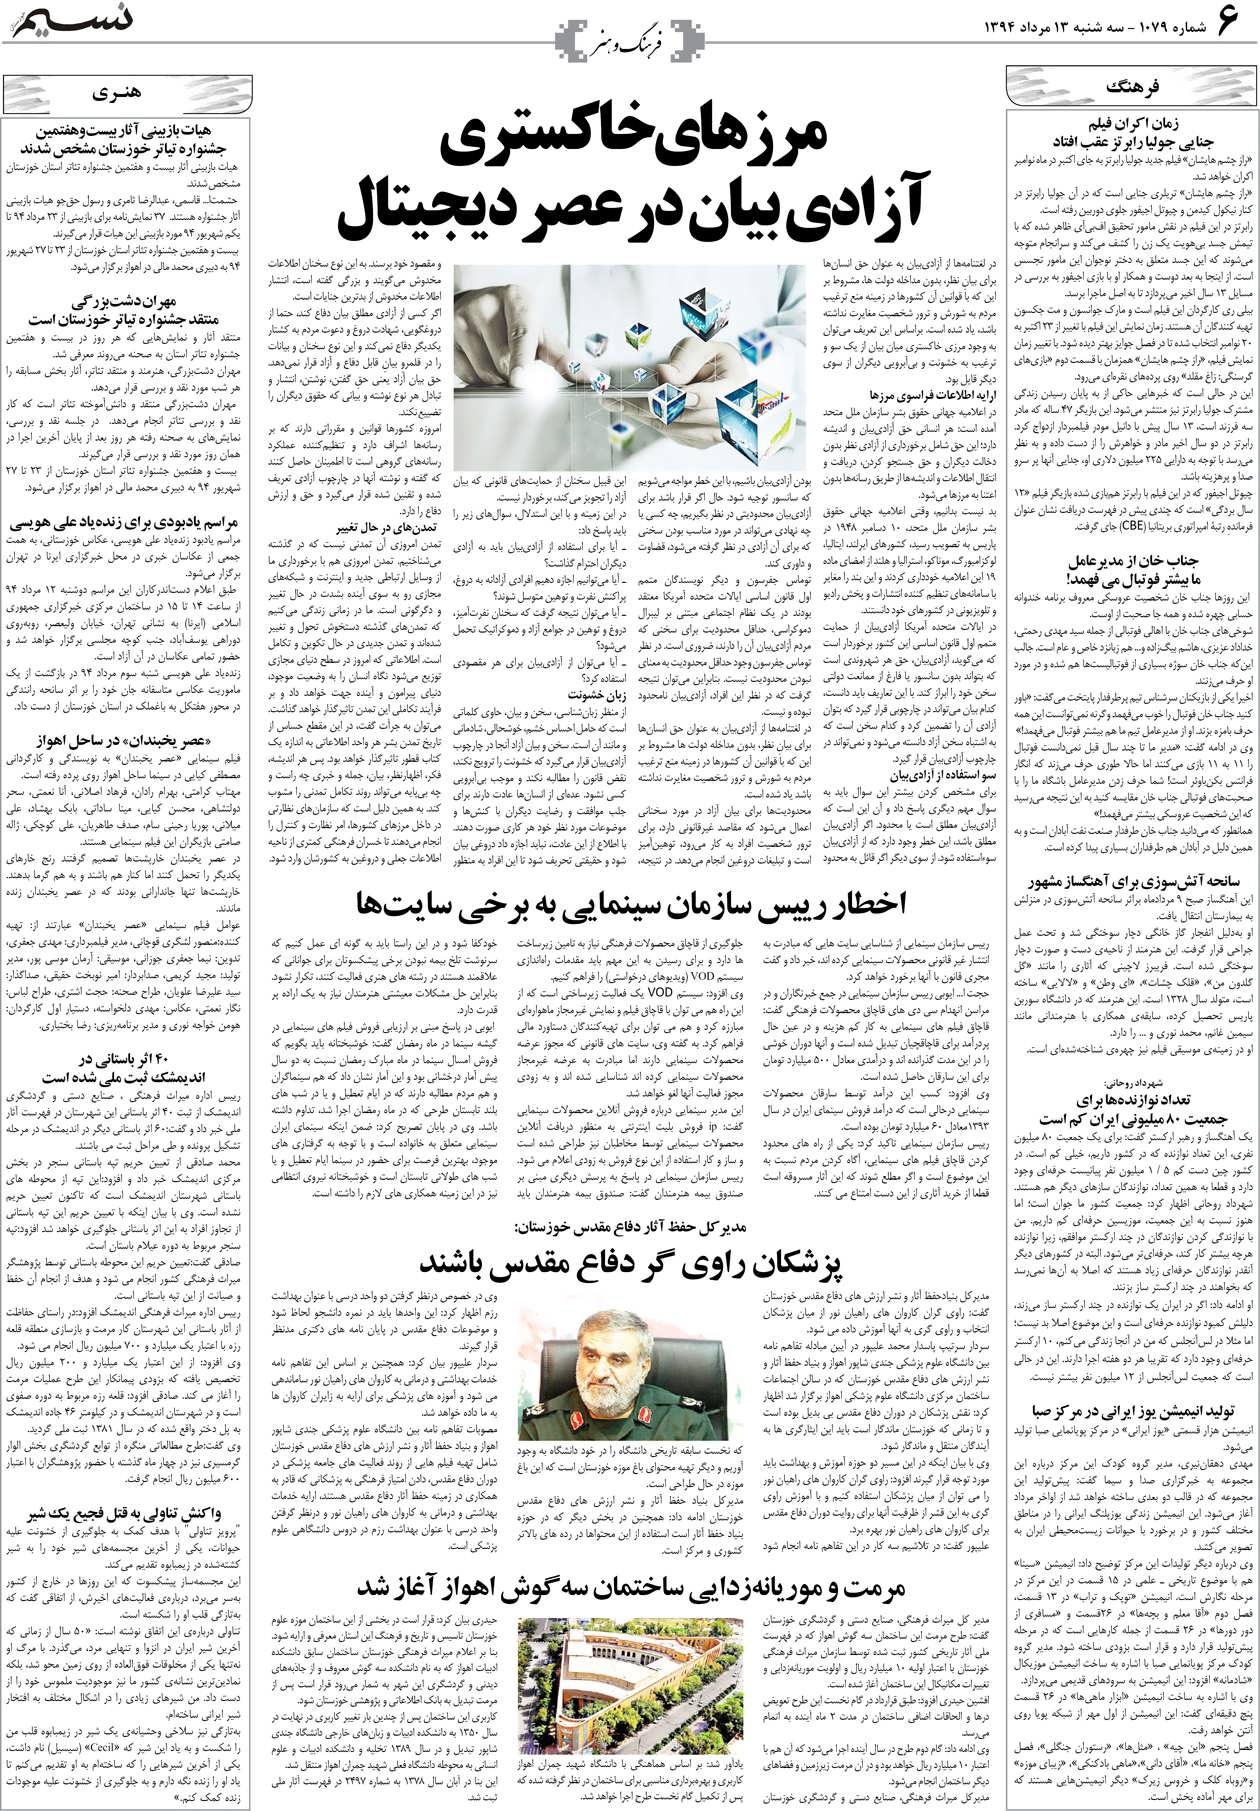 صفحه فرهنگ و هنر روزنامه نسیم شماره 1079